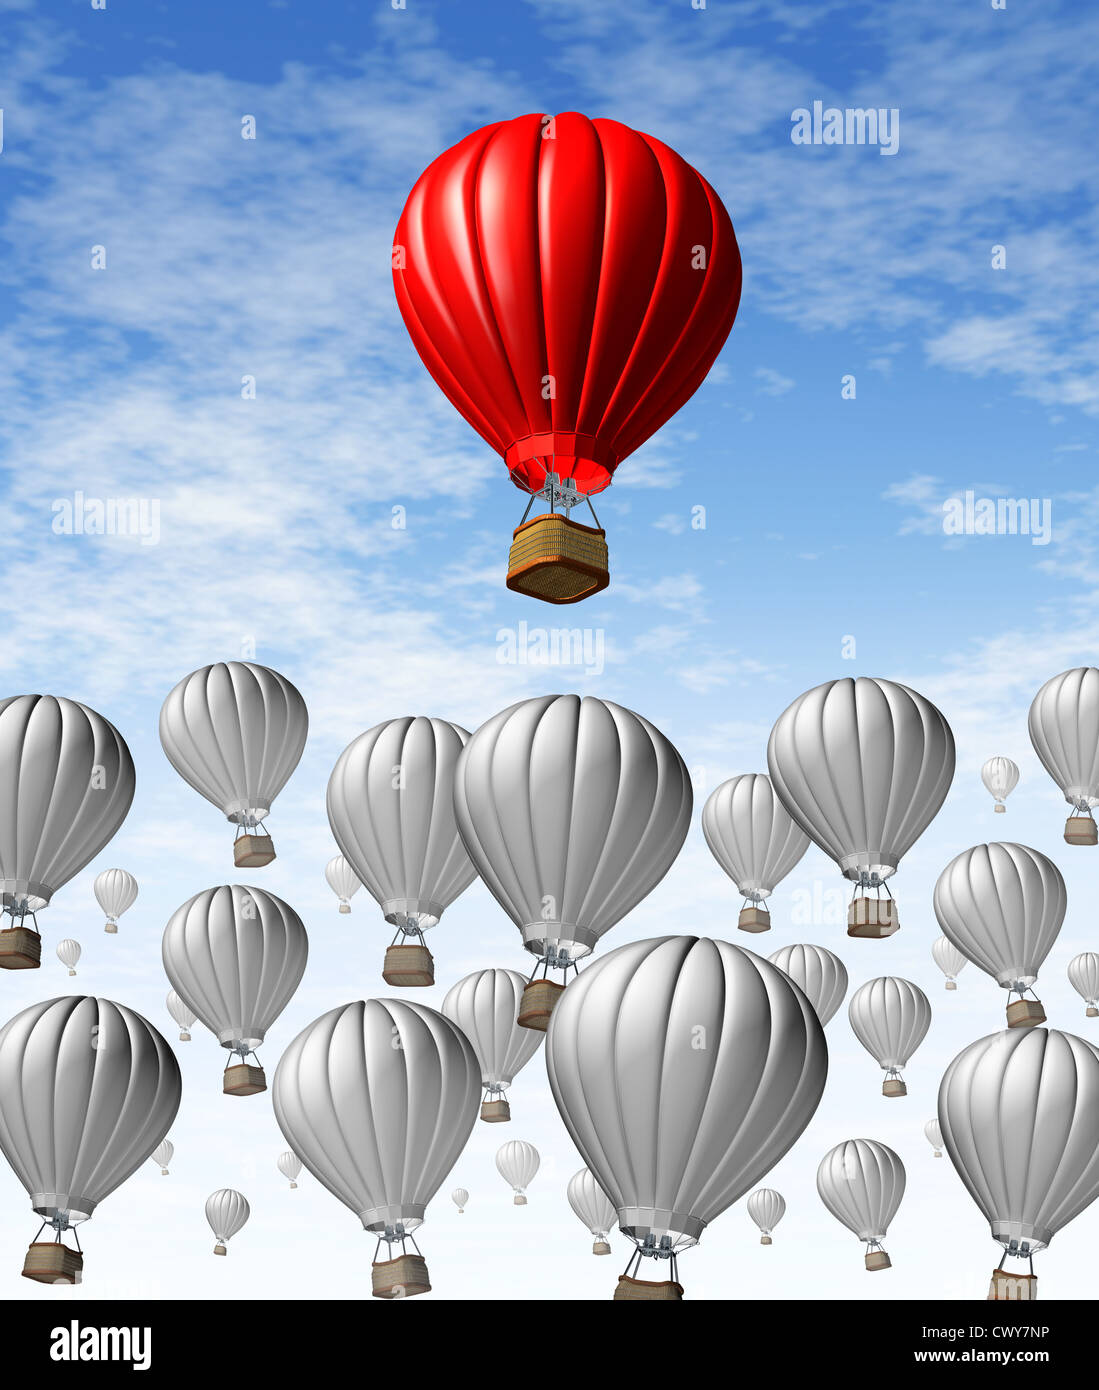 Steigen an die Spitze als Geschäfts- und finanzielle Symbol für den Erfolg mit einer Gruppe von grauen Heißluftballons und einen roten Ballon als das beste mit den meisten Potentioal für Wachstum vom Rest abheben. Stockfoto